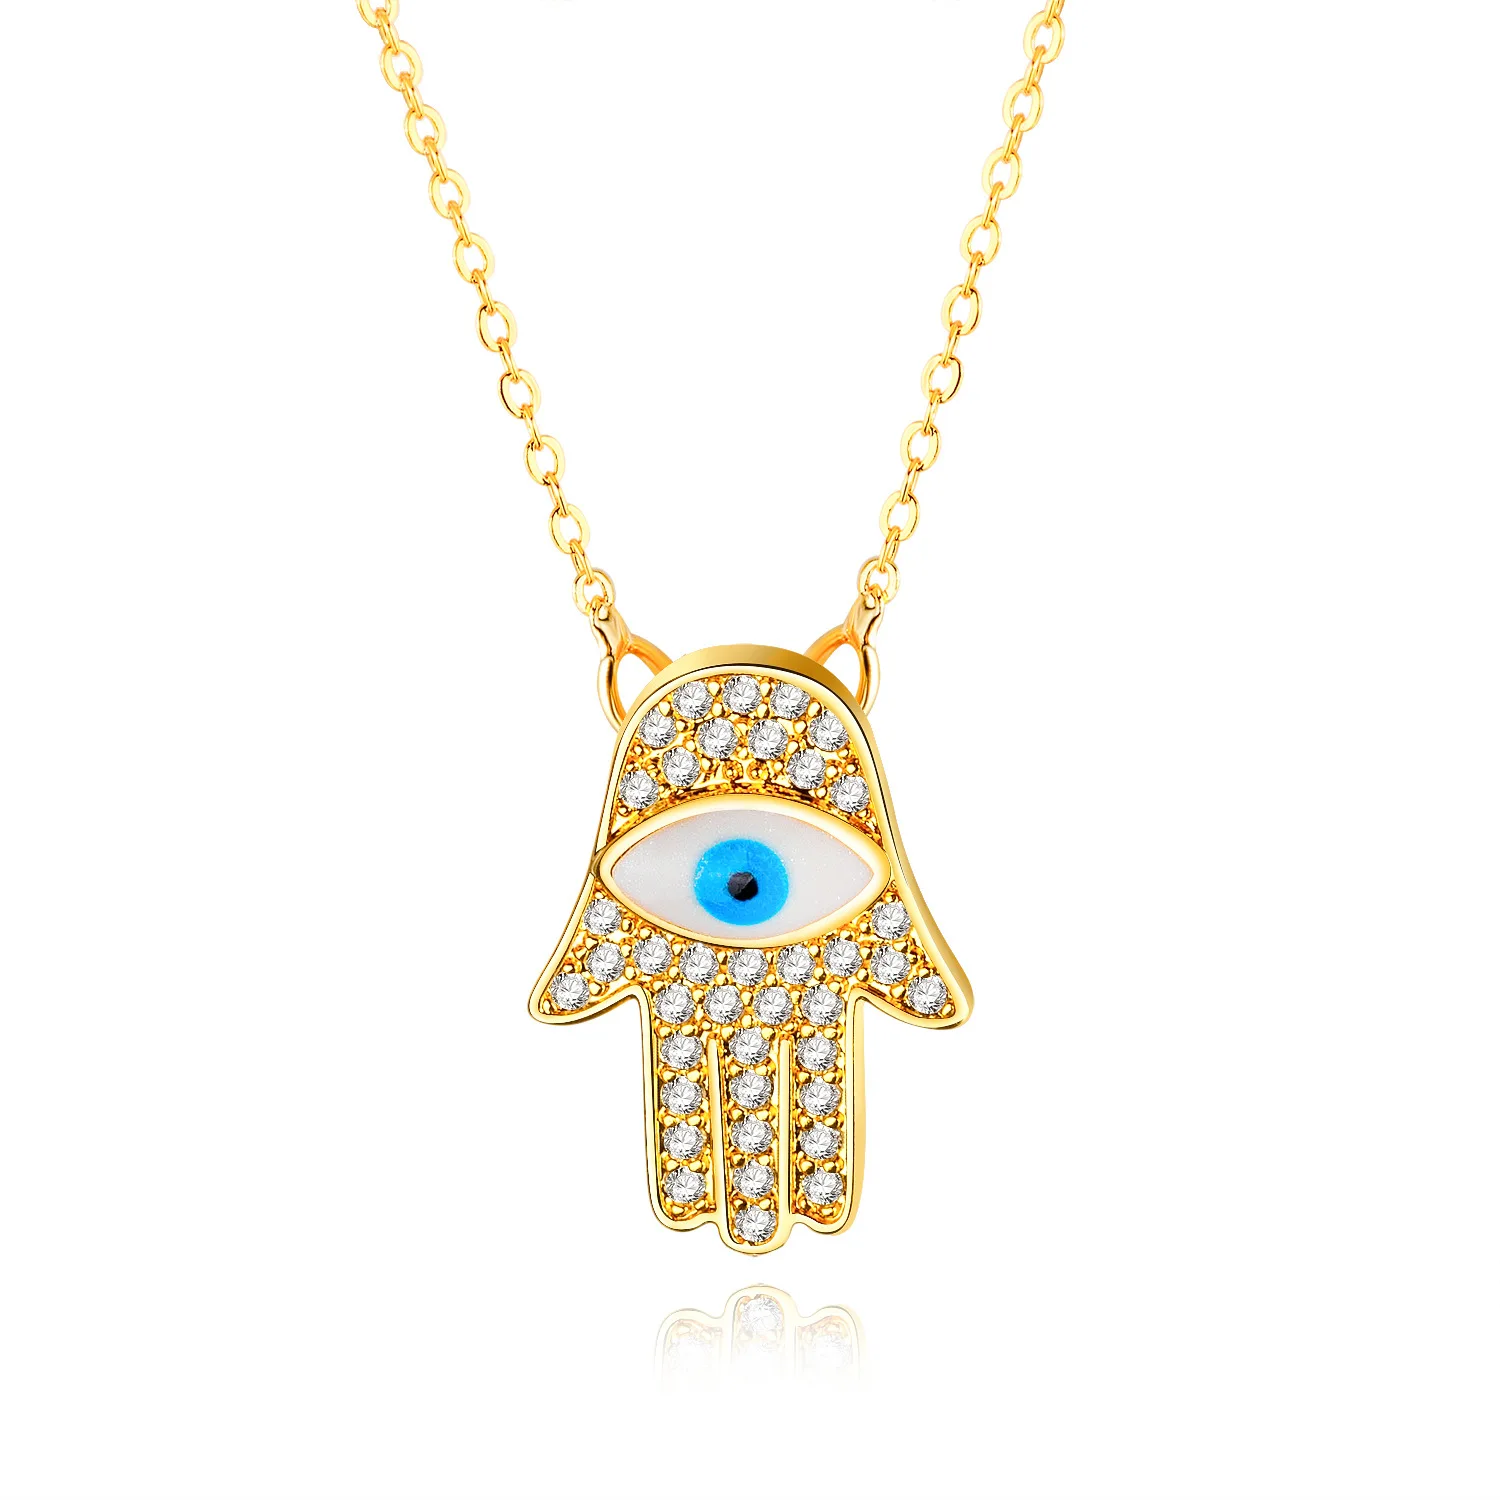 Fashion Unique Allah Eye Pendant/blue Eye Pendant Necklace - Buy Eye ...